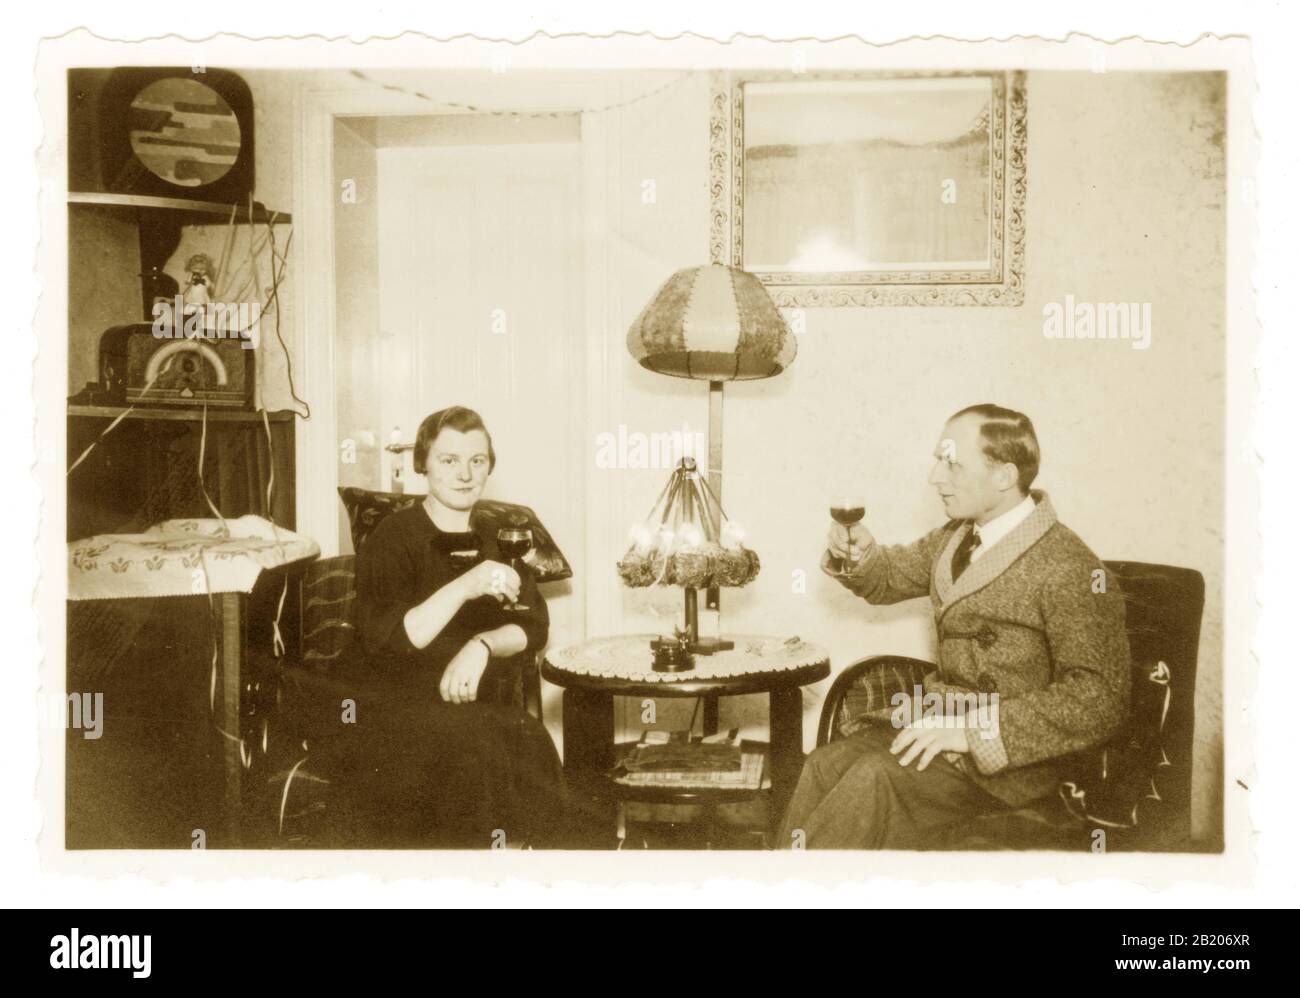 All'inizio del 1900 fotografia istantanea di coppia rilassante a Natale con un drink, l'ascolto della radio, la radio e altoparlante sono in stile Art Deco, fili ovunque, interessanti interni domestici intorno agli anni '20 '30 - sconosciuto posizione europea. Foto Stock